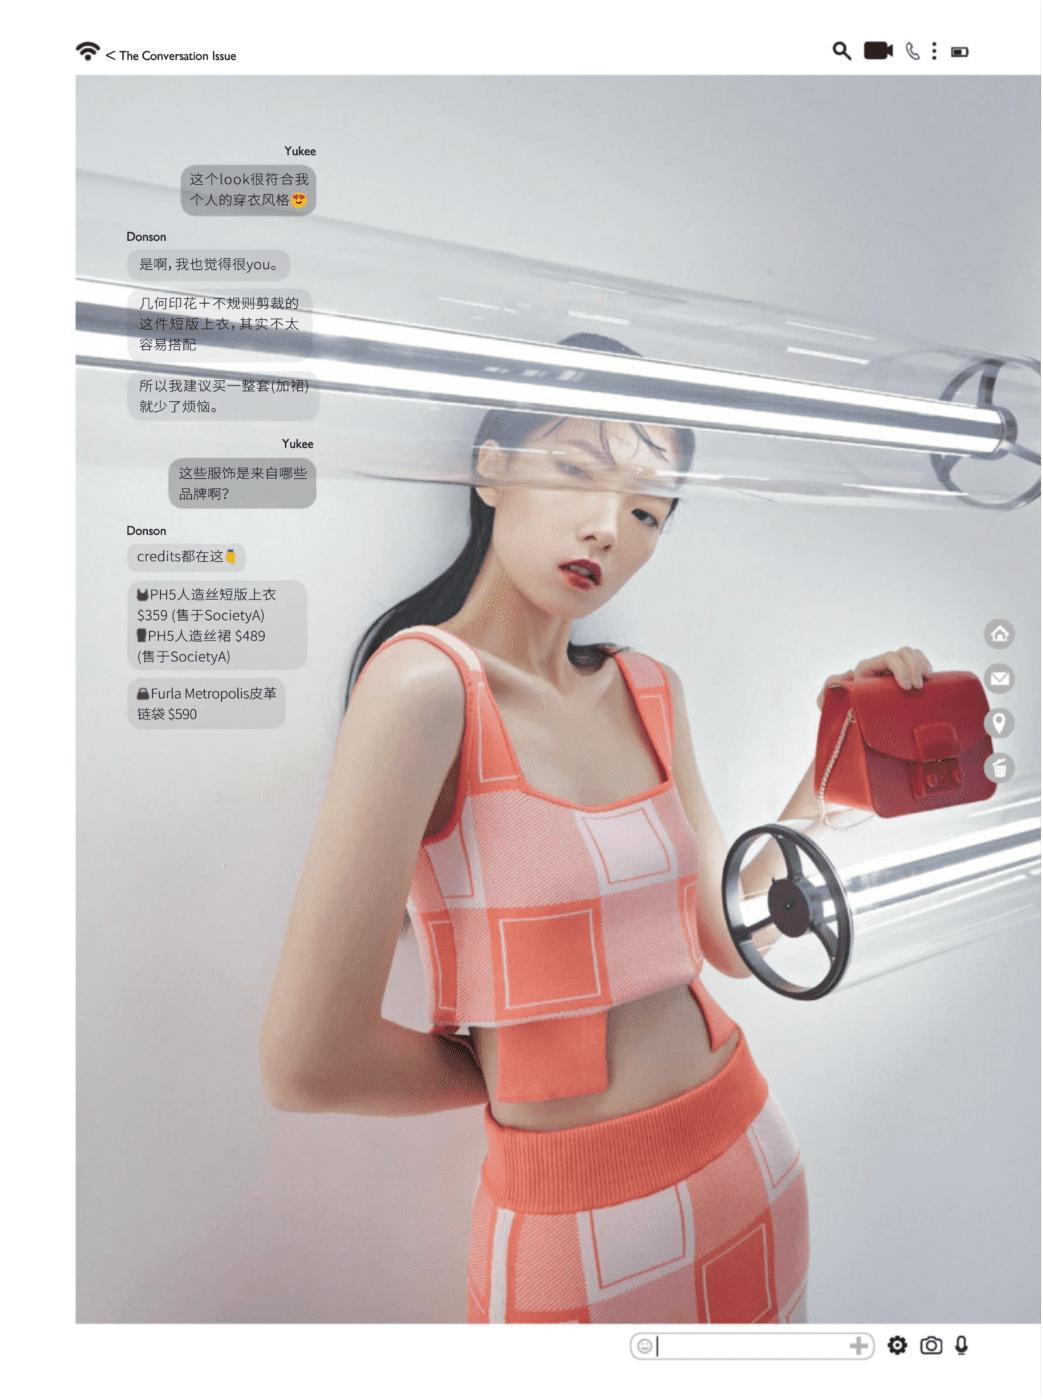 yukee wang basic models singapore female fashion malaysia